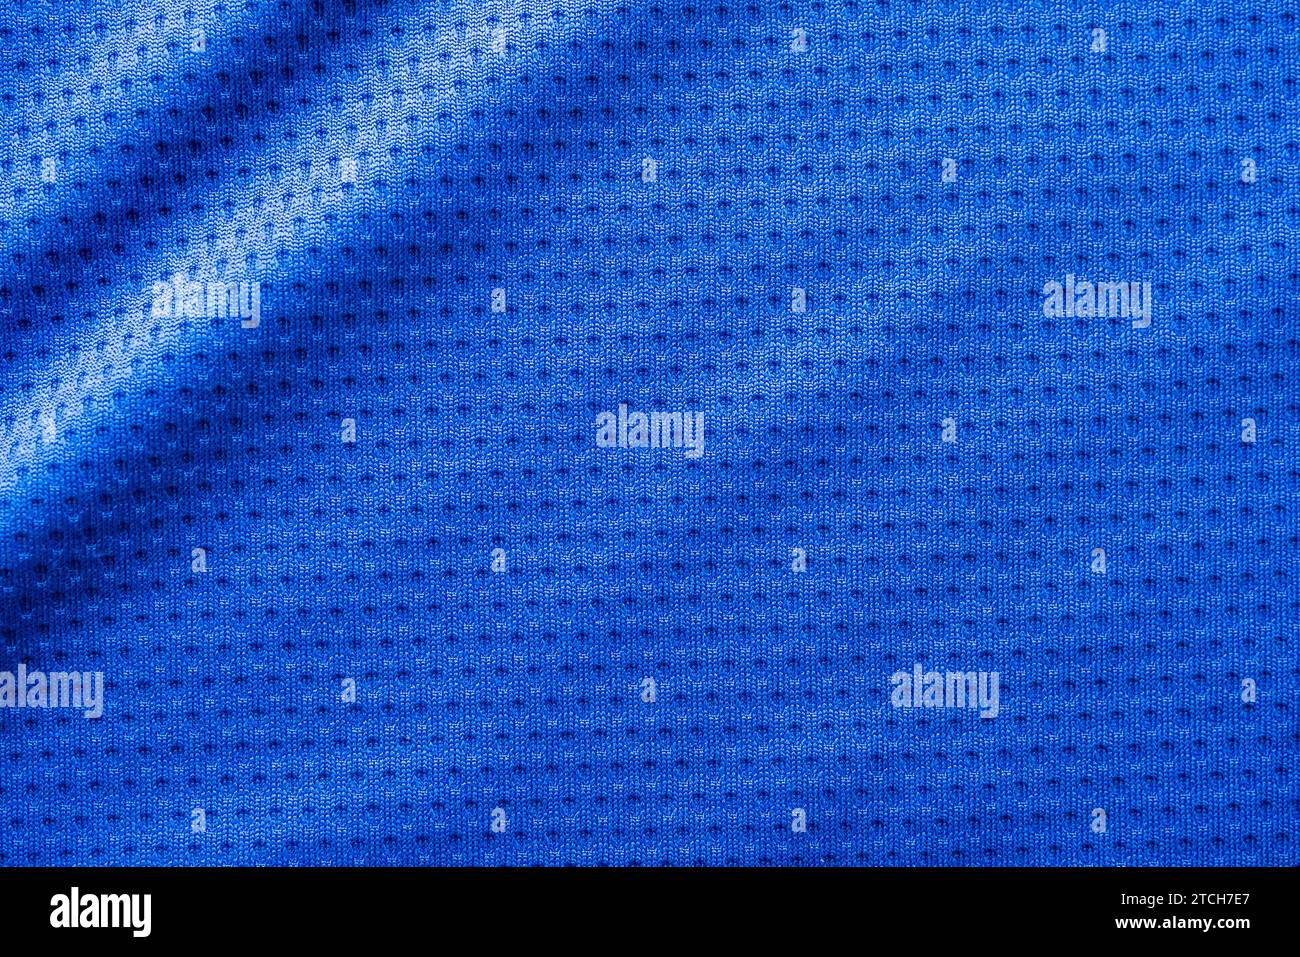 Maglia da calcio in tessuto blu con sfondo a maglia d'aria Foto Stock